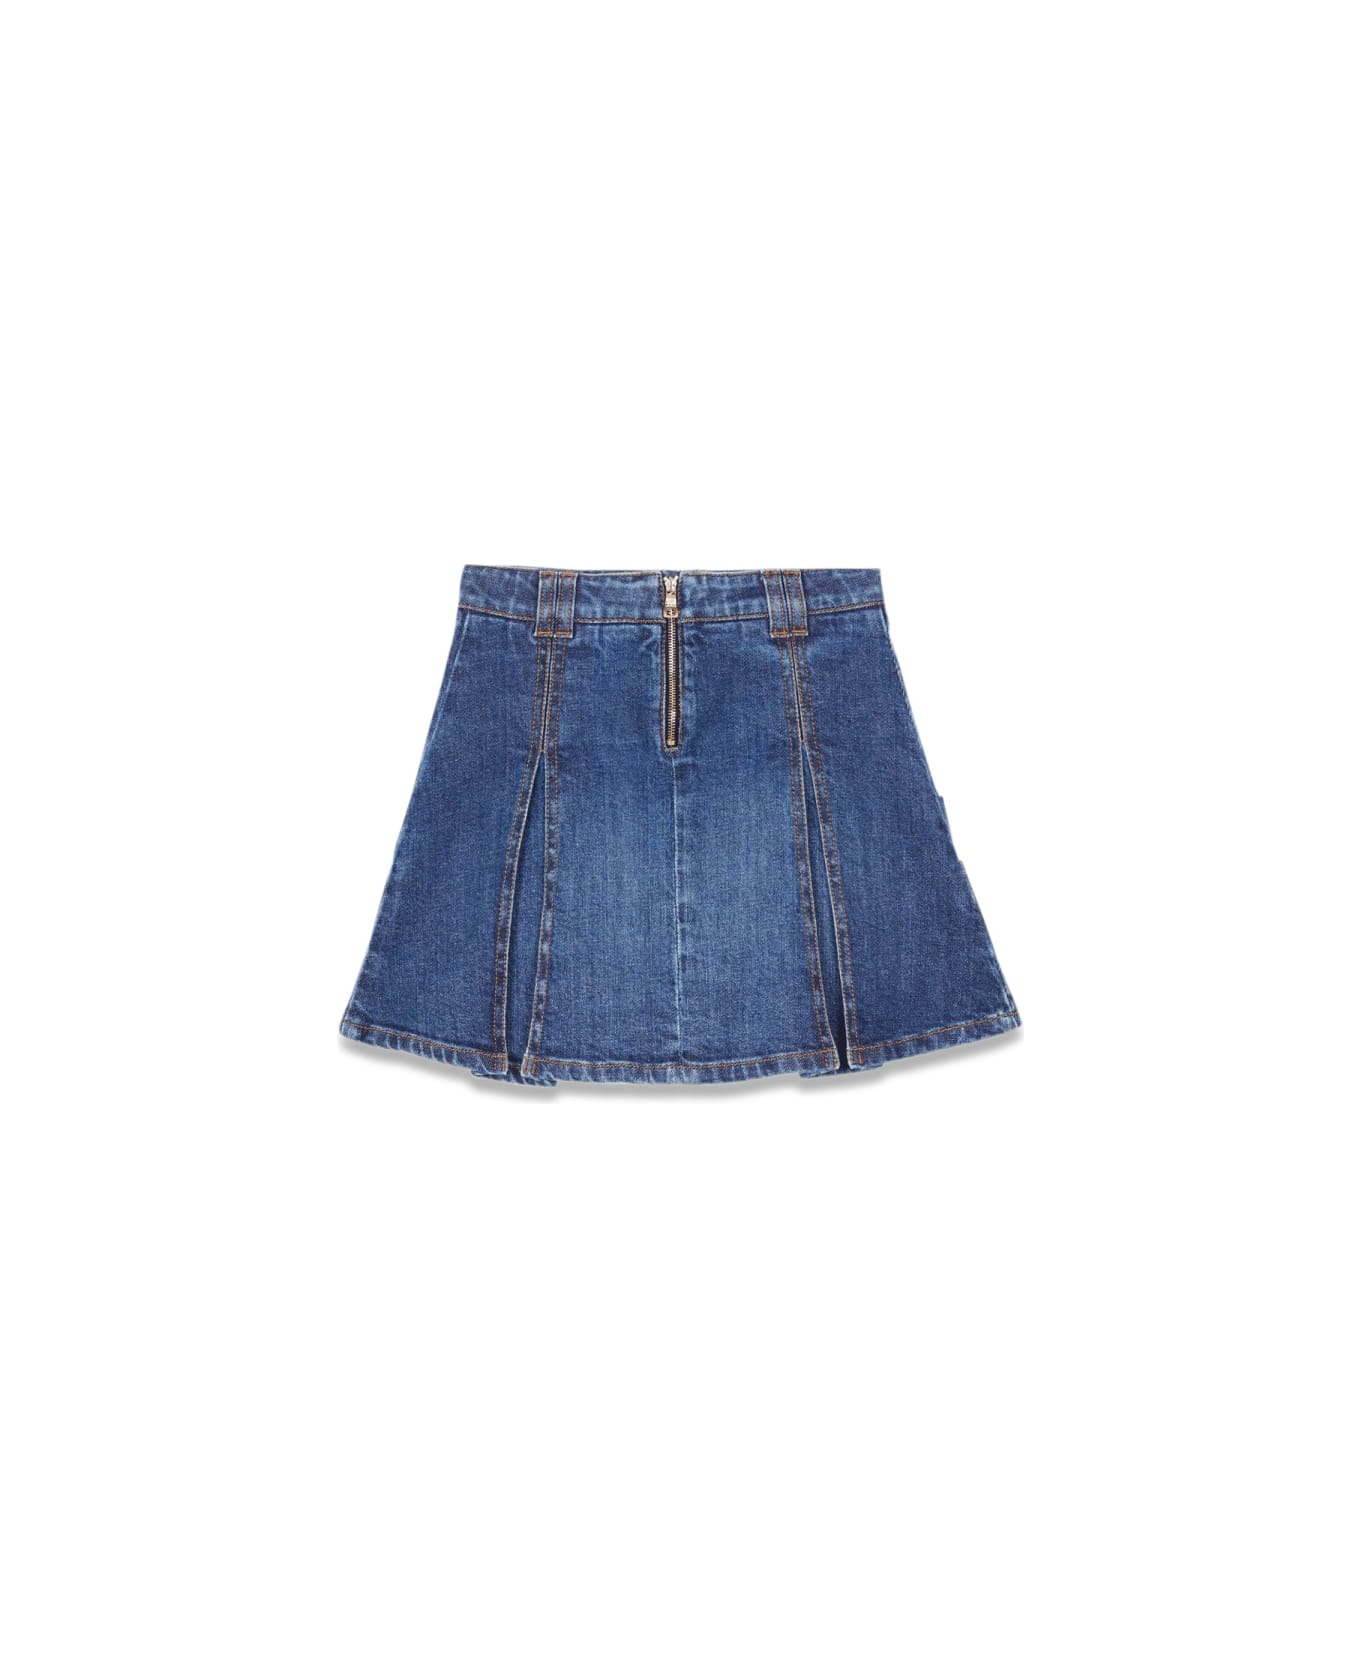 Balmain Skirt - BLUE